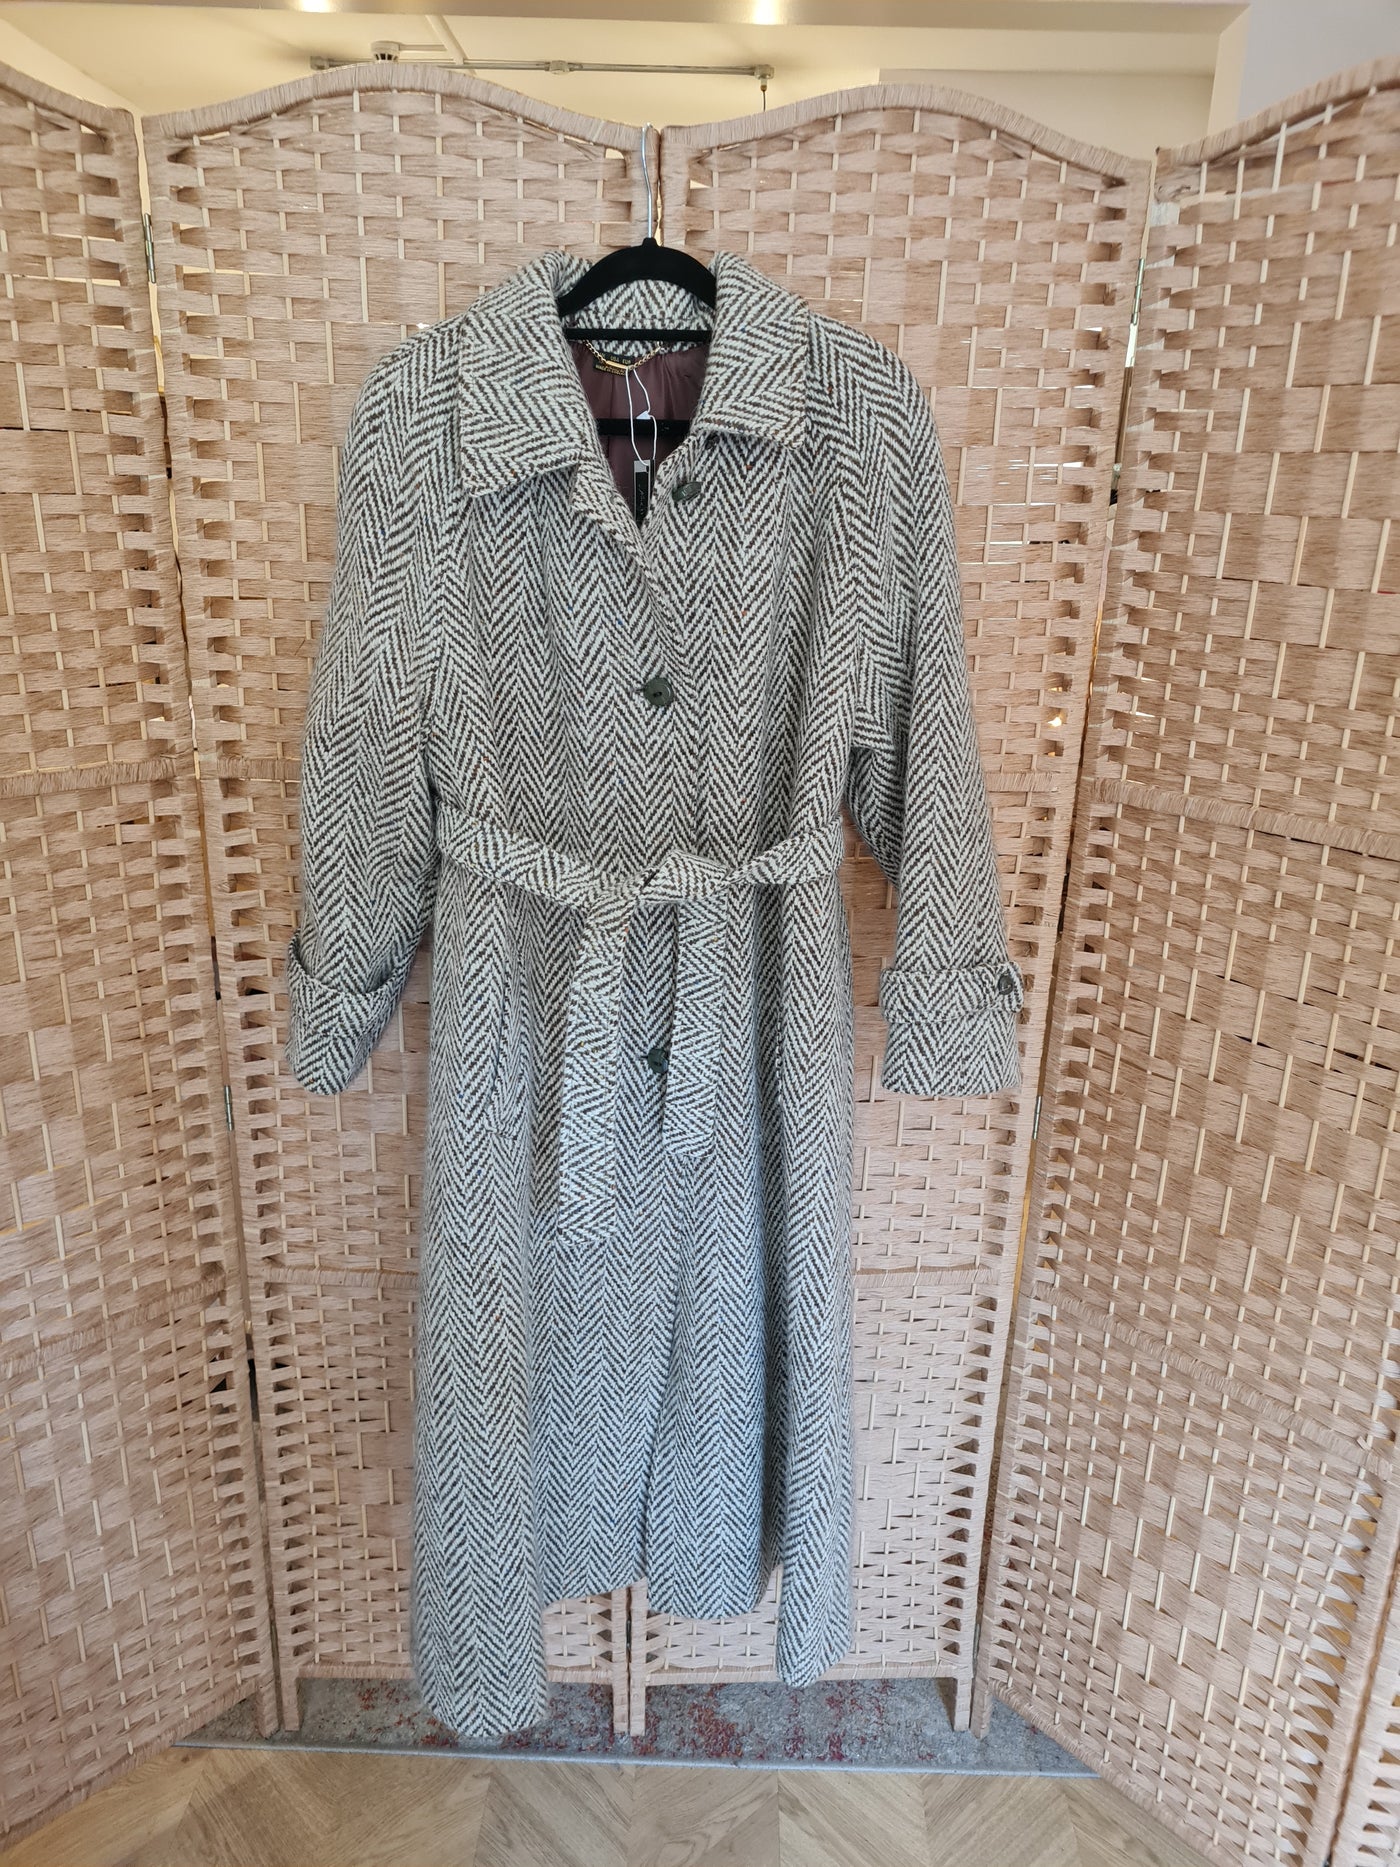 Lampert Cream & brown wool coat 18